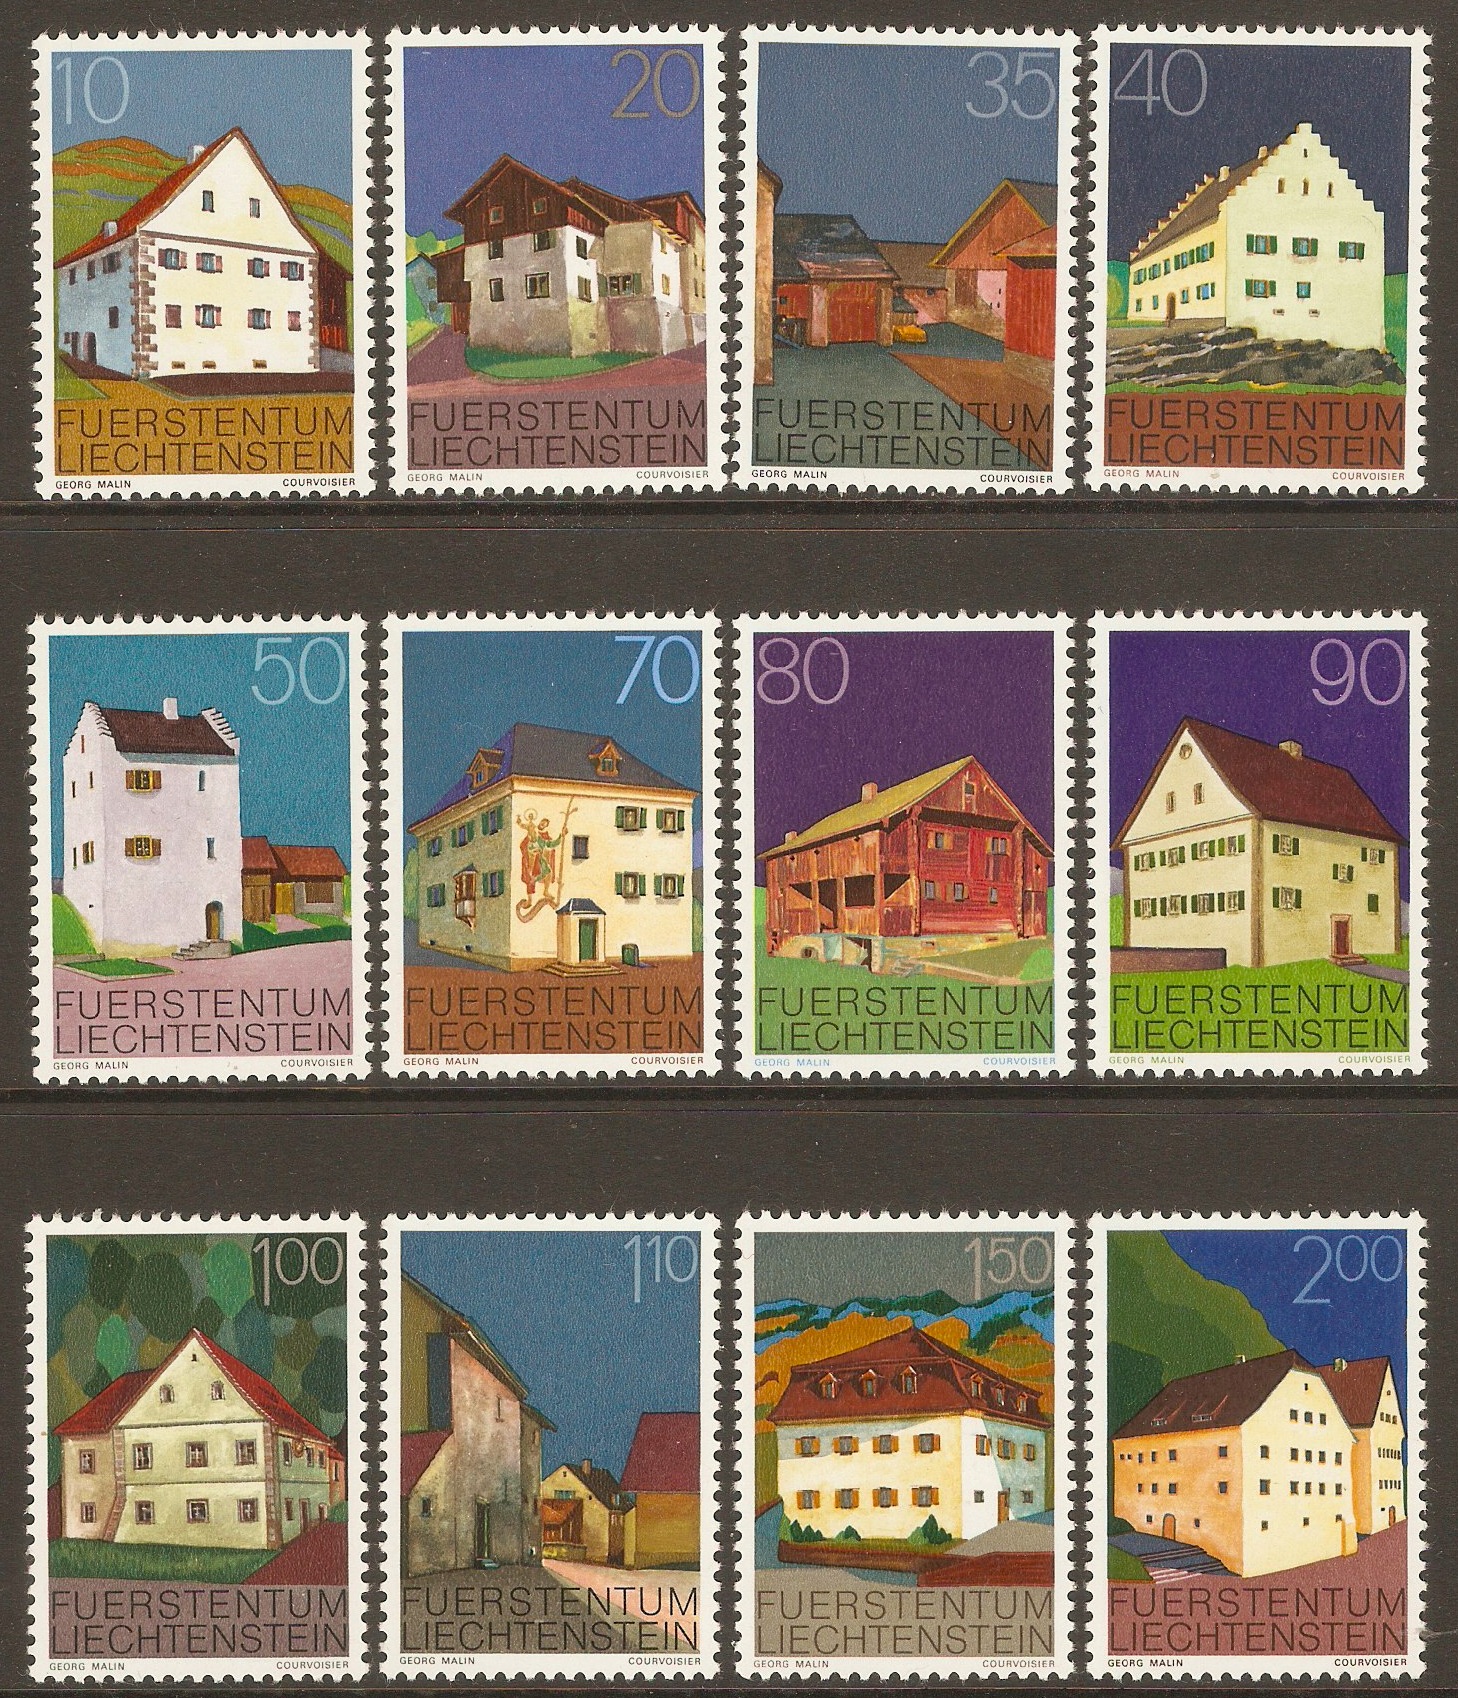 Liechtenstein 1978 Buildings set. SG691-SG702.